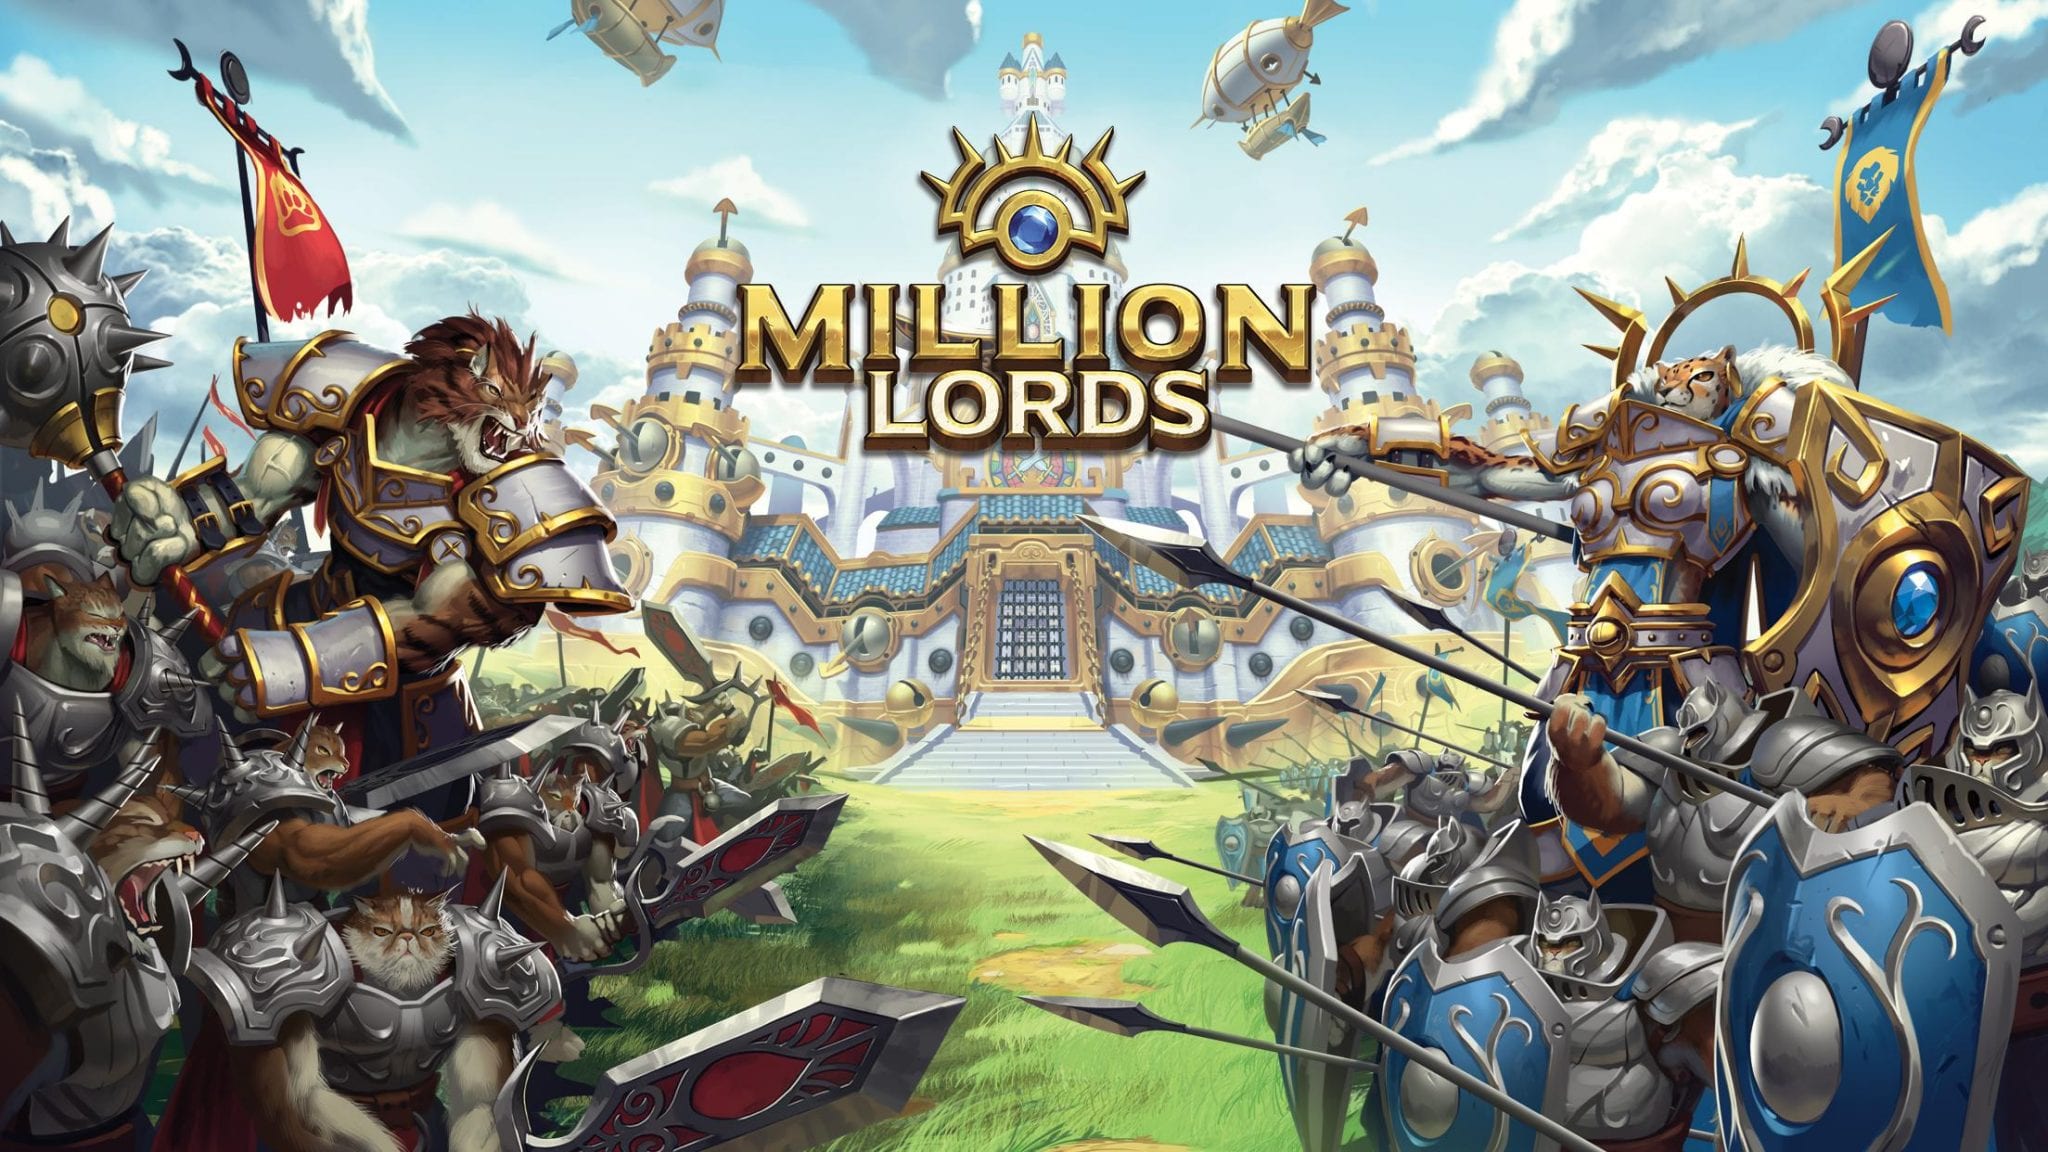 بررسی بازی Million Lords: Kingdom Conquest و معرفی مختصر آن